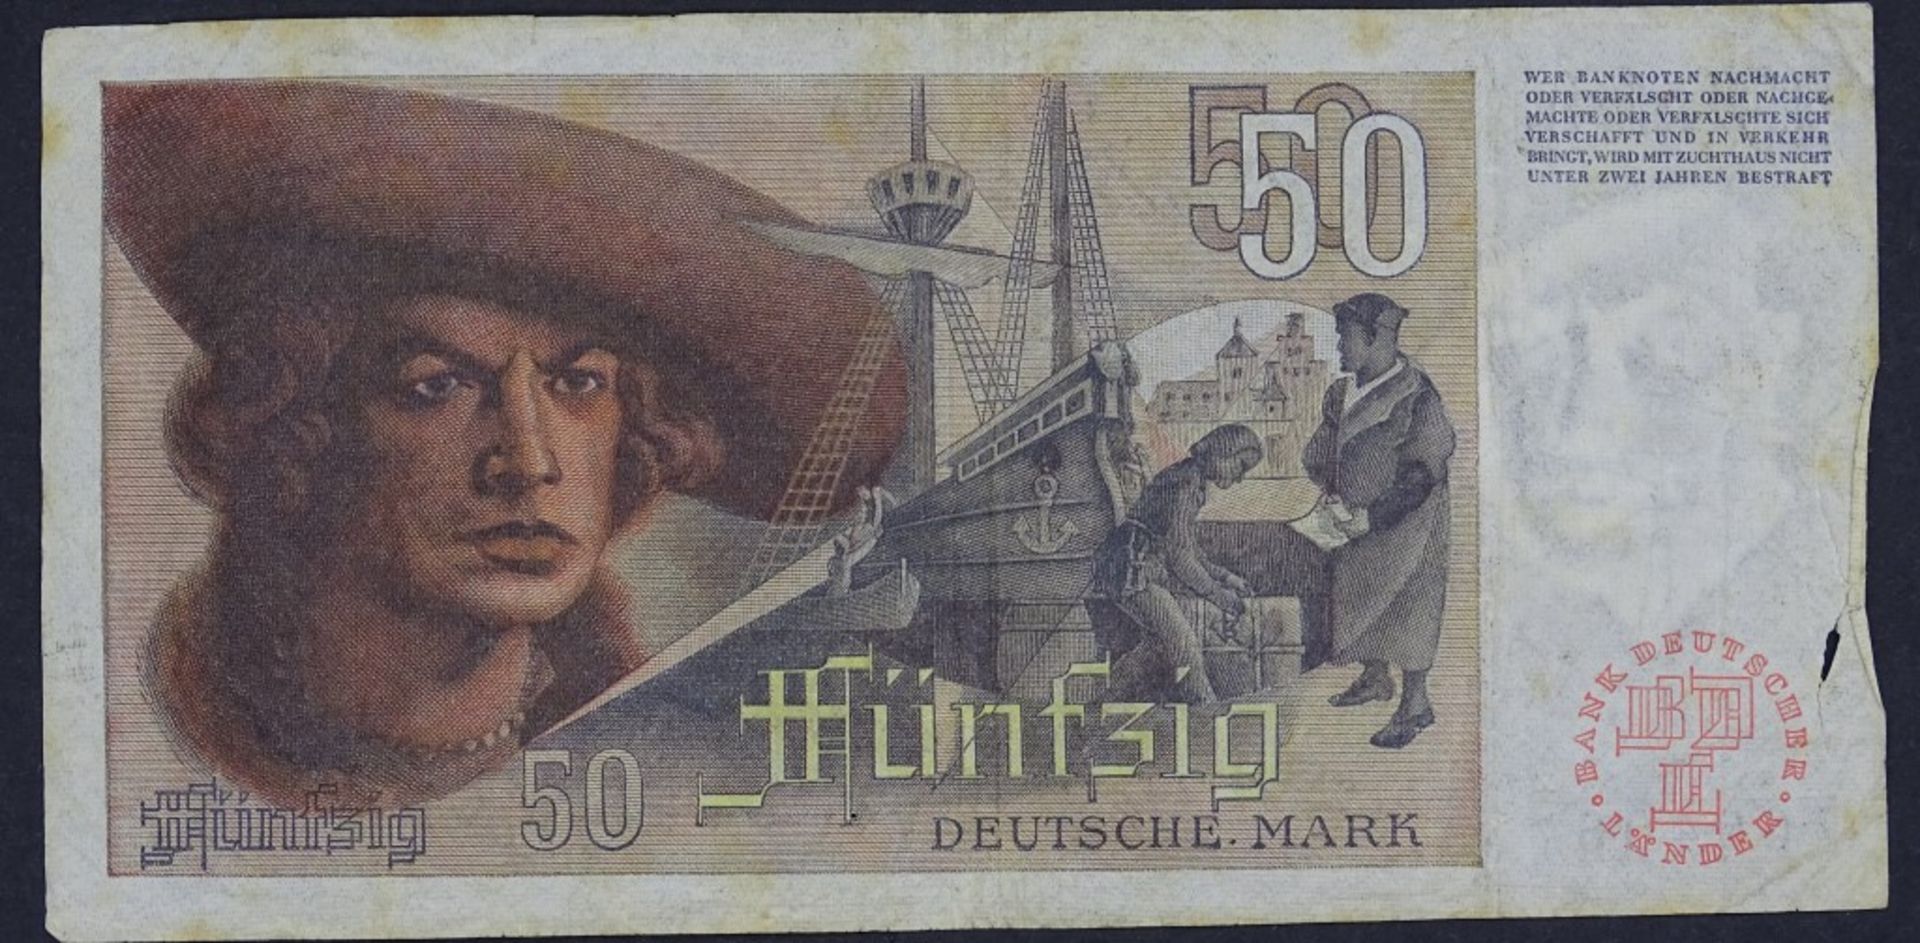 Banknote - 50 Deutsche Mark 1948 - Bank deutscher Lände- - -22.61 % buyer's premium on the hammer - Bild 2 aus 2